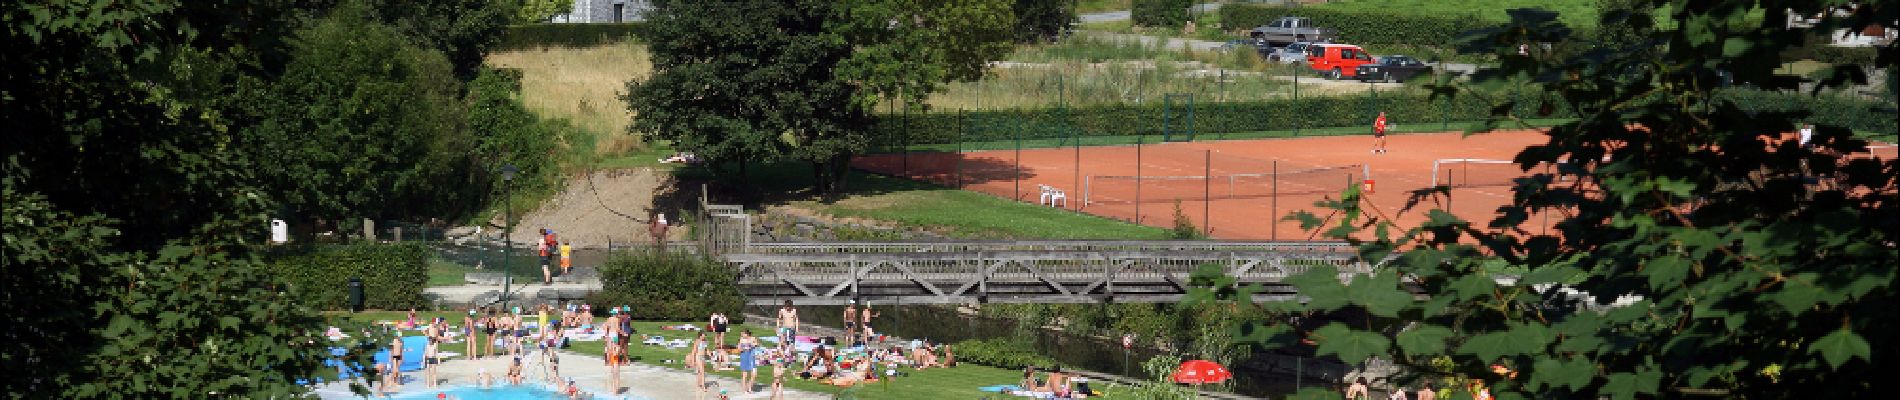 Point d'intérêt Rochefort - Parc des Roches (parc classé avec piscine, mini-golf, plaine de jeux, tennis...) - Photo